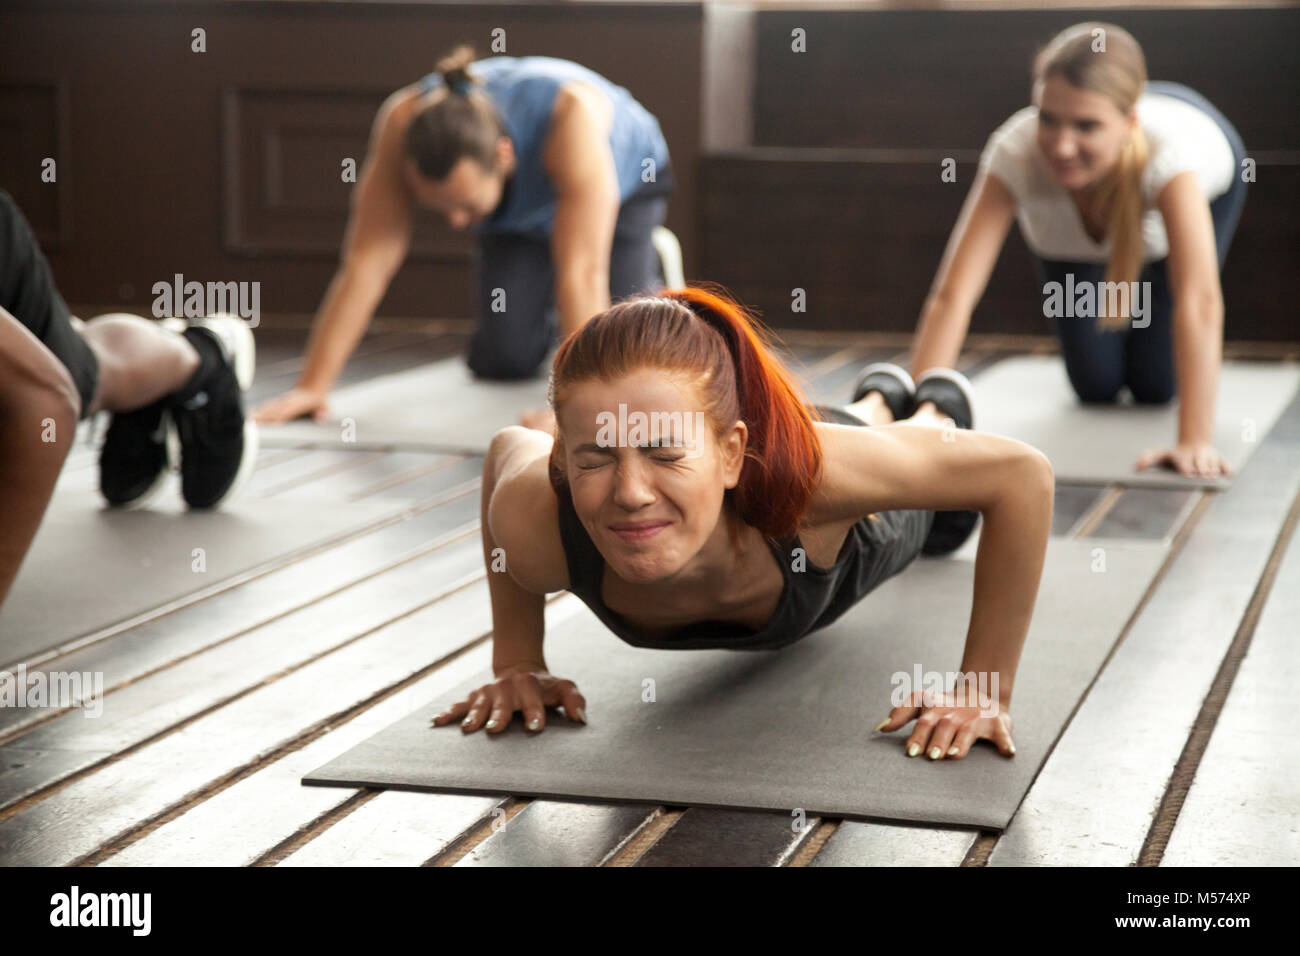 Frau tun schwierig Plank übung oder Liegestütze auf Gruppe Trainin Stockfoto